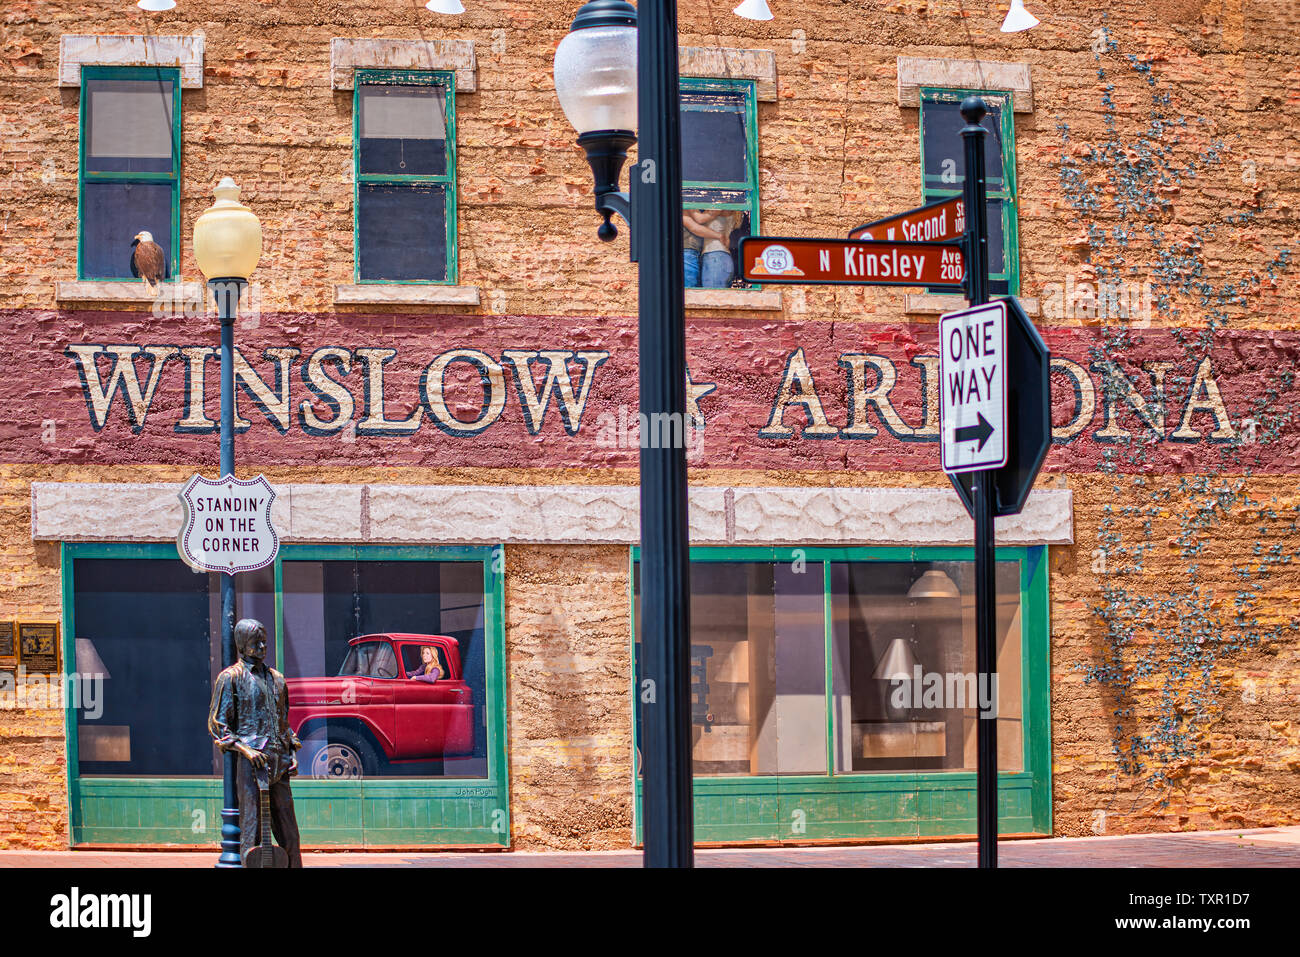 Winslow Arizona, USA 5/16/2016. Seite von Gebäude mit Kunst arbeiten, Windows, Menschen umarmen, Adler, Fahrzeug mit Fahrerin. Schilder, Statue Stockfoto